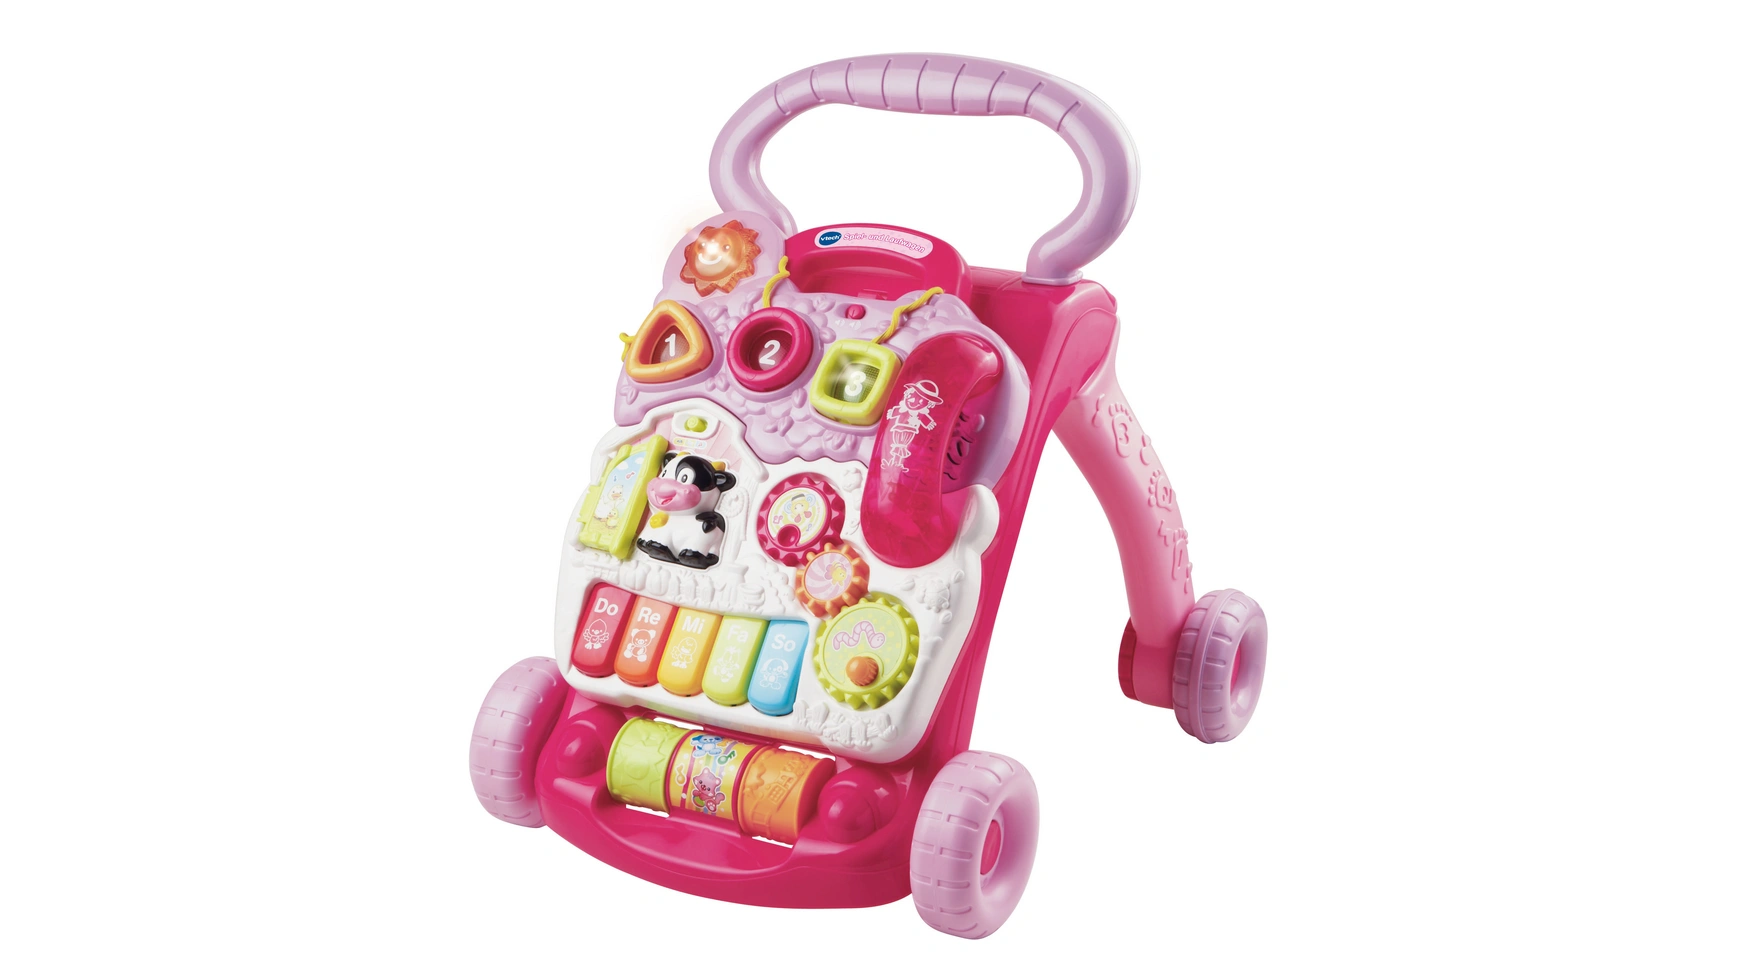 VTech Baby Игра и коляска розовый очень большая игрушка толстая коляска регулируемая детская коляска игровой домик игрушка для девочек детская игрушка коляска